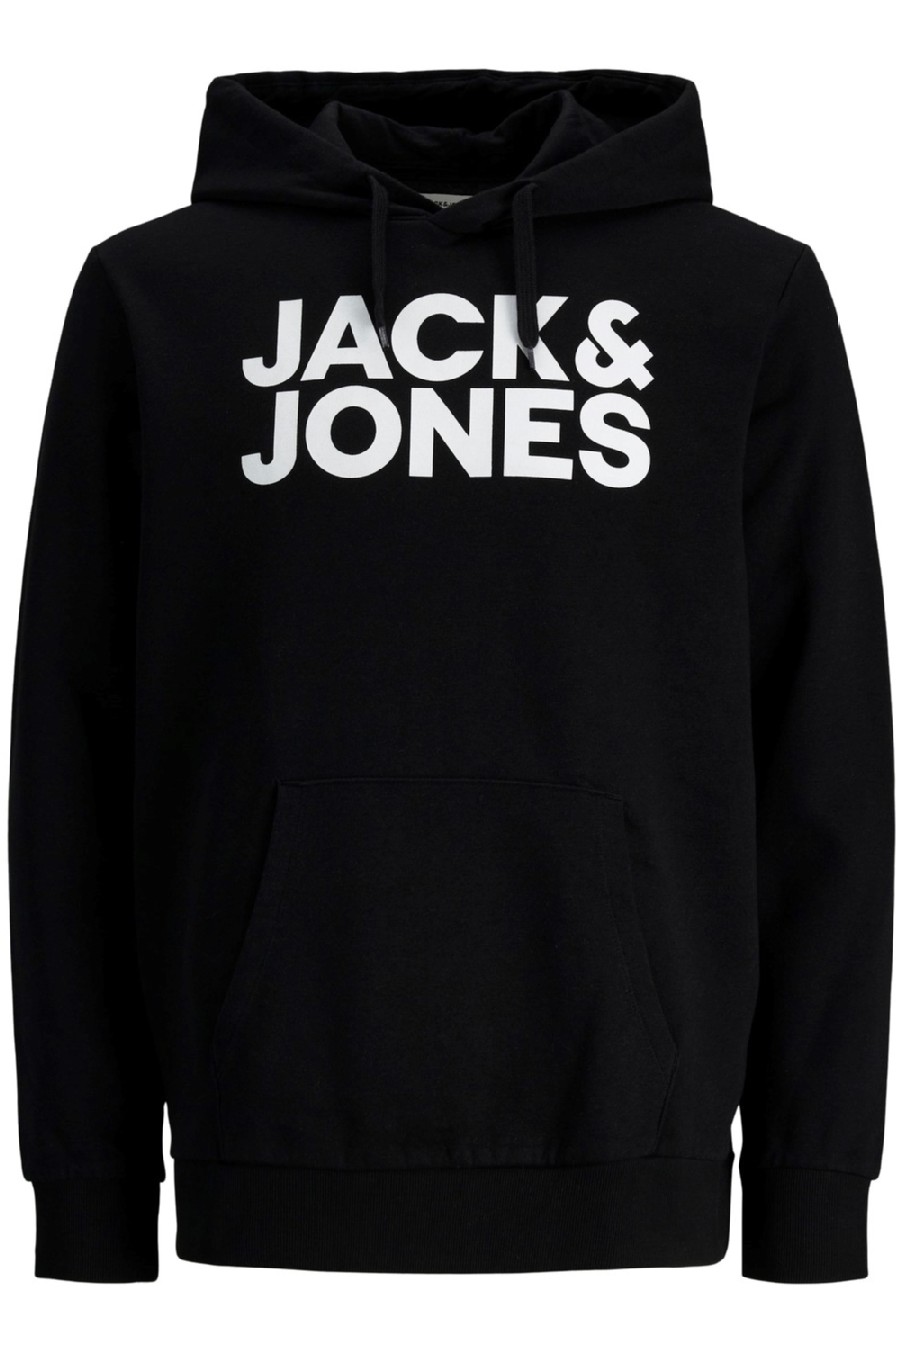 Džemperis JACK & JONES 12152840-Black